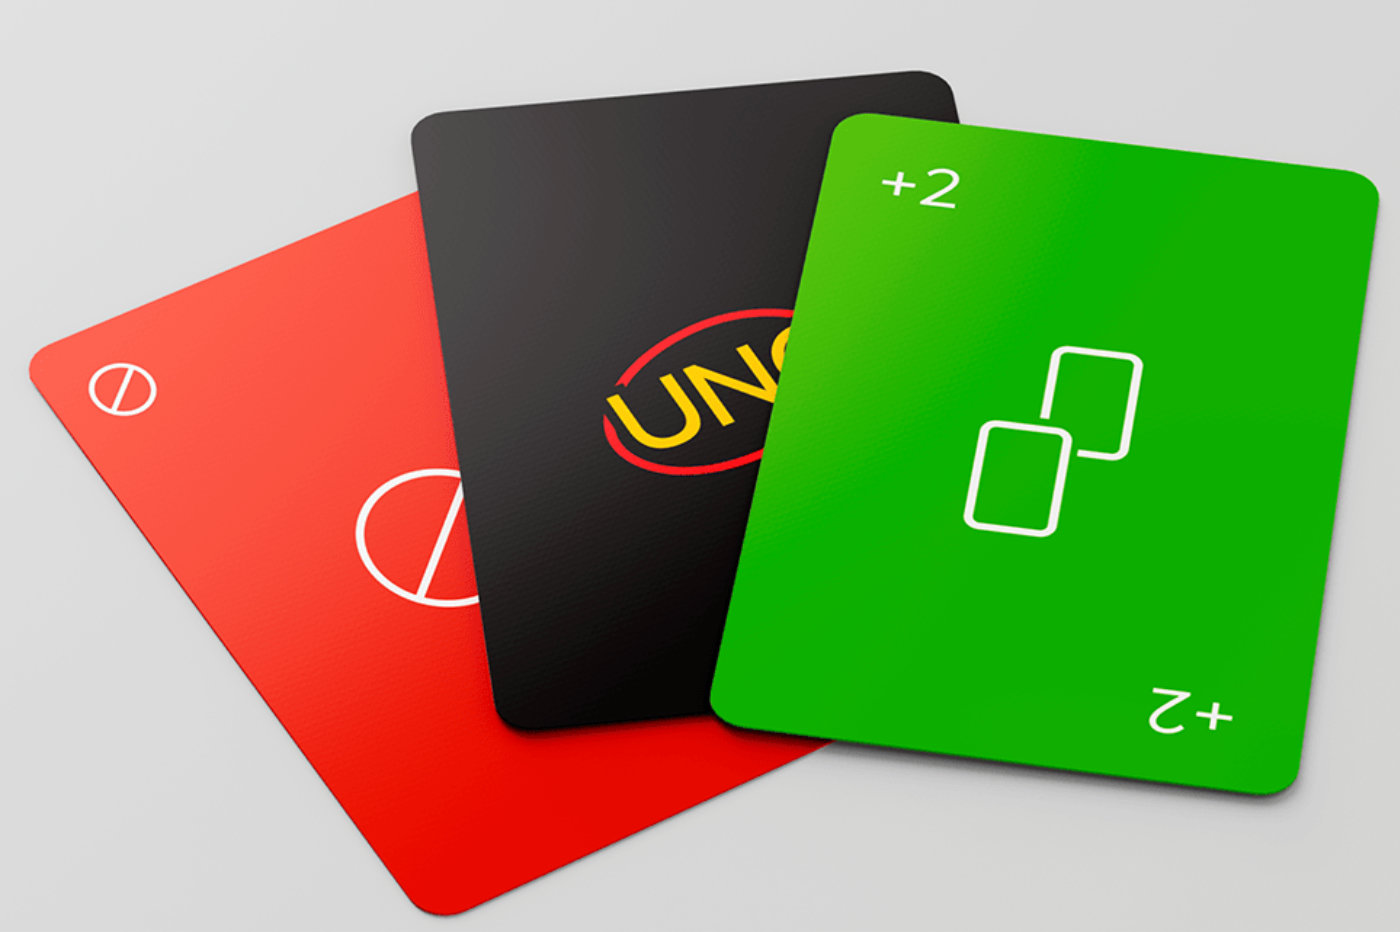 Jogo Uno com versão minimalista, Noticias